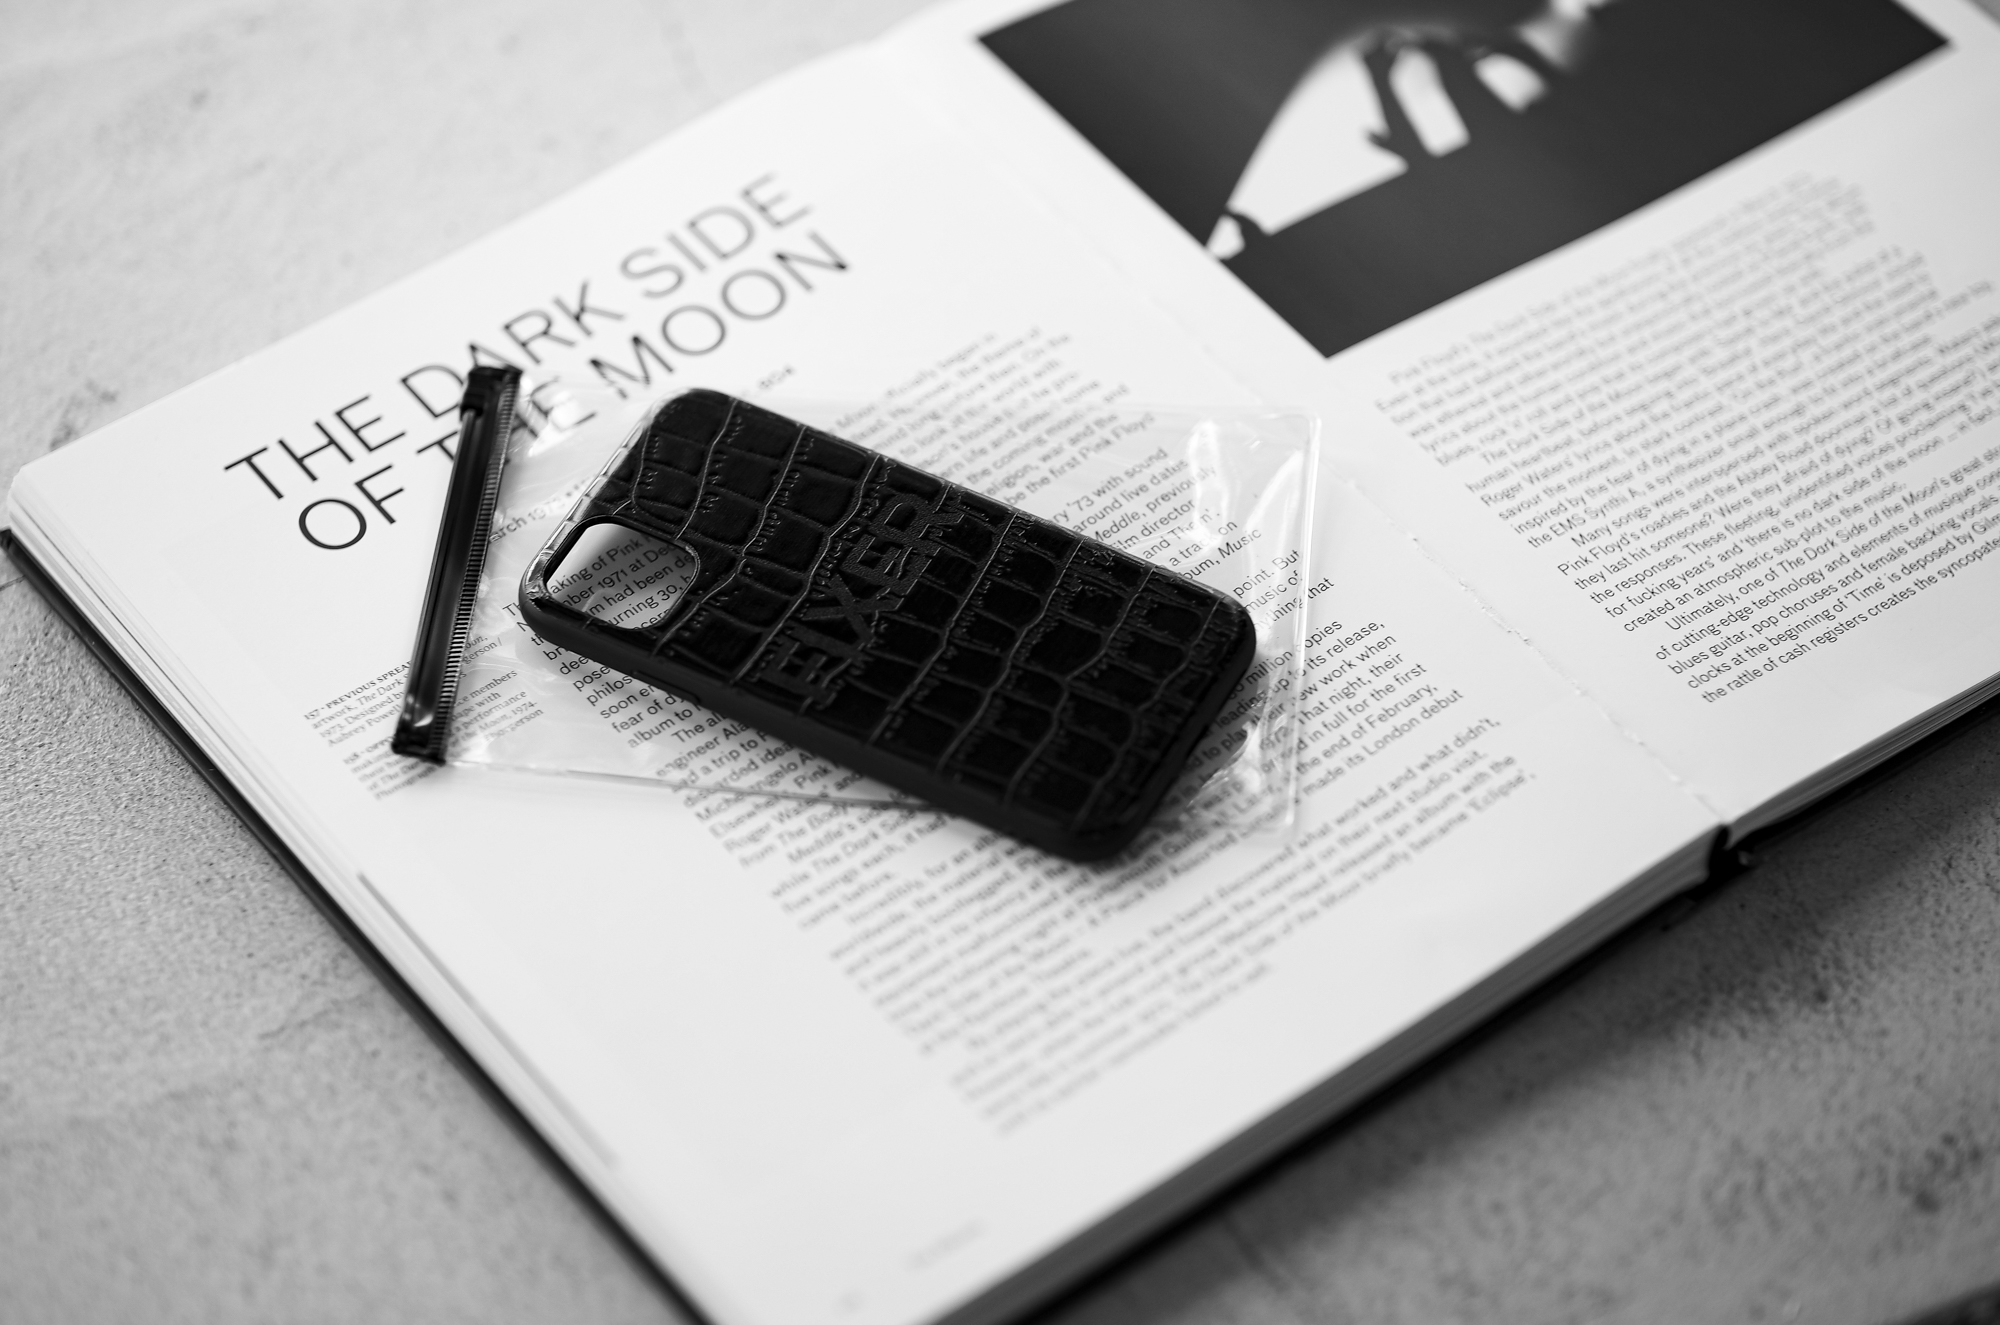 FIXER "iPhone 12mini Crocodile Case" ALL BLACK フィクサー アイフォンケース 携帯ケース ノーマルケース クロコダイルケース ブラック ブラック ホワイト オールブラック 愛知 名古屋 Alto e Diritto altoediritto アルトエデリット